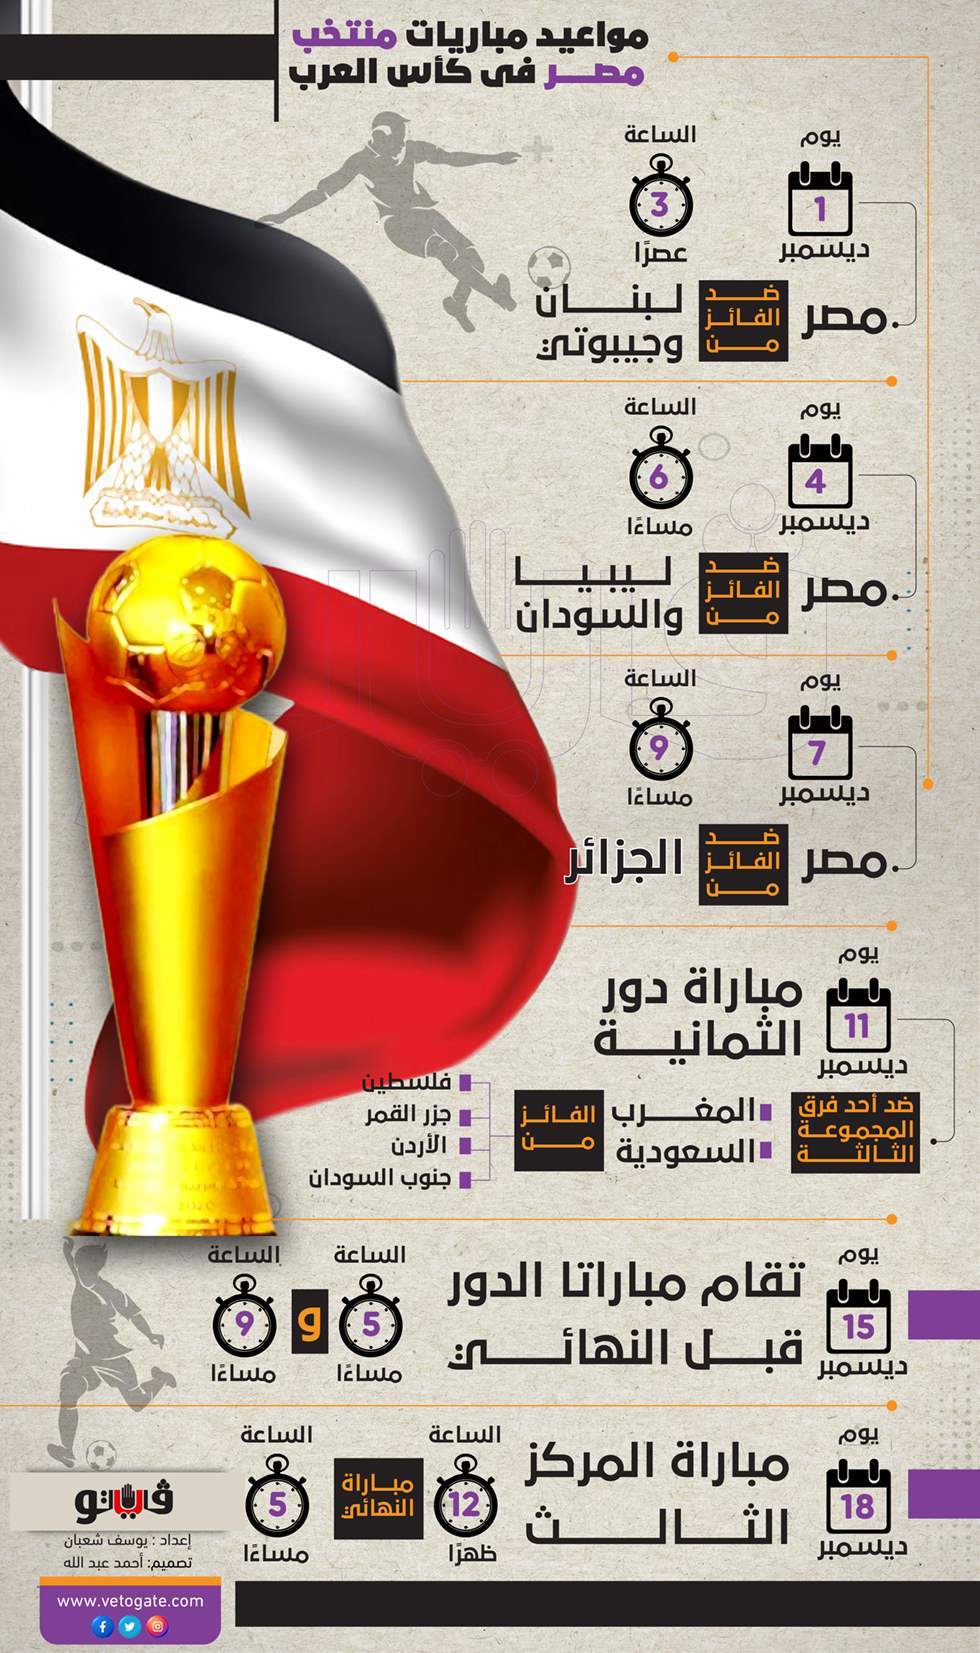 مواعيد مباريات كاس العرب